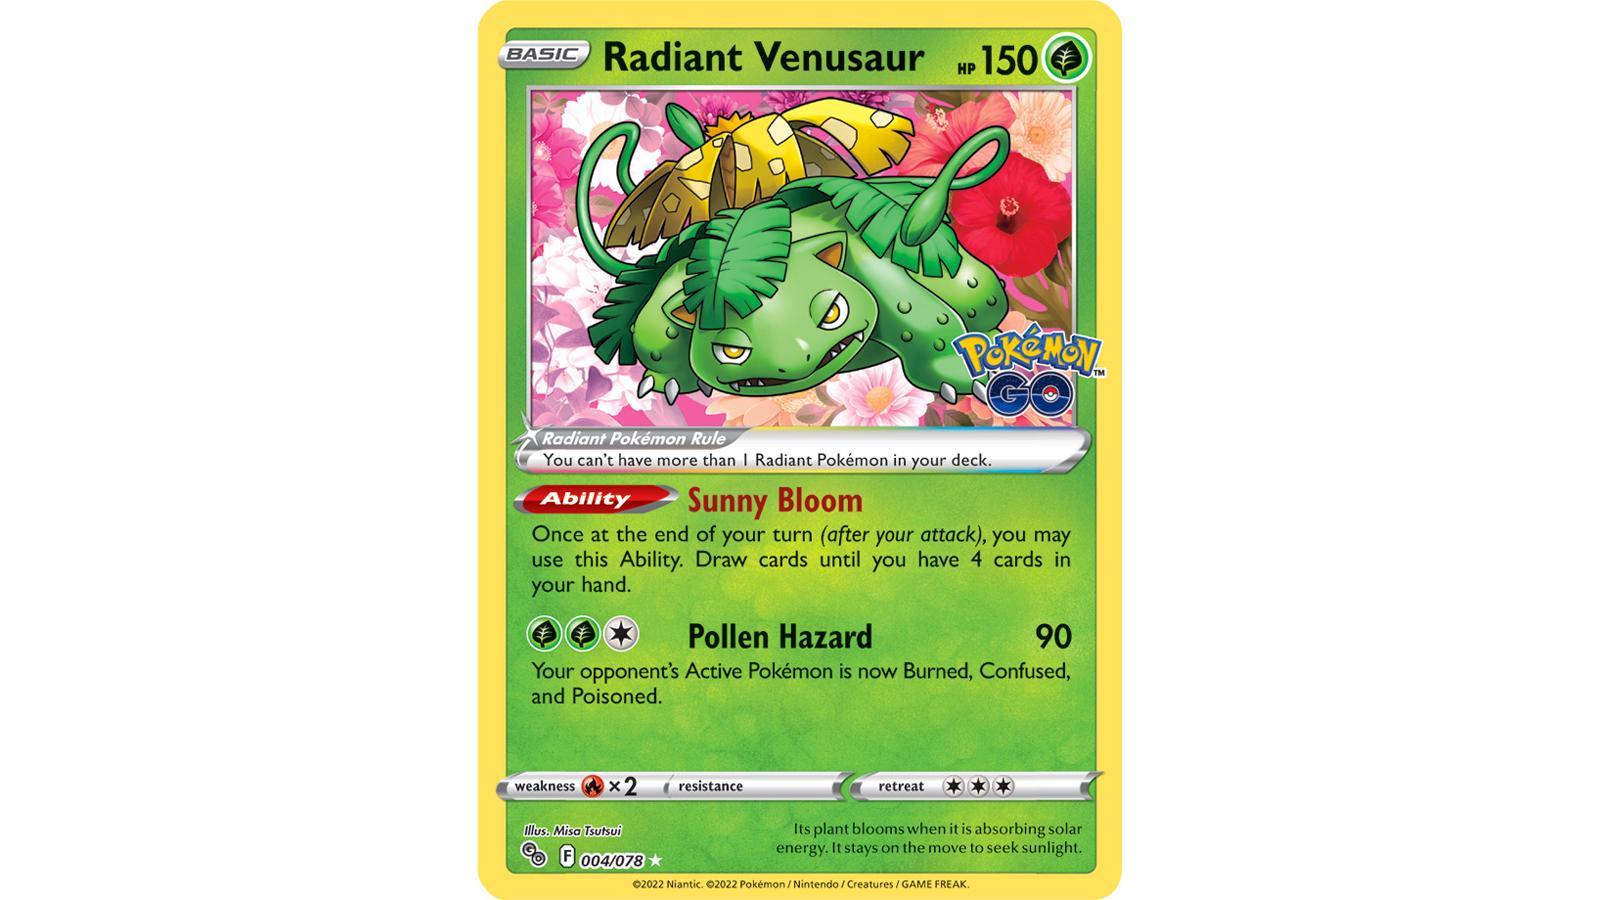 Radiant Venusaur